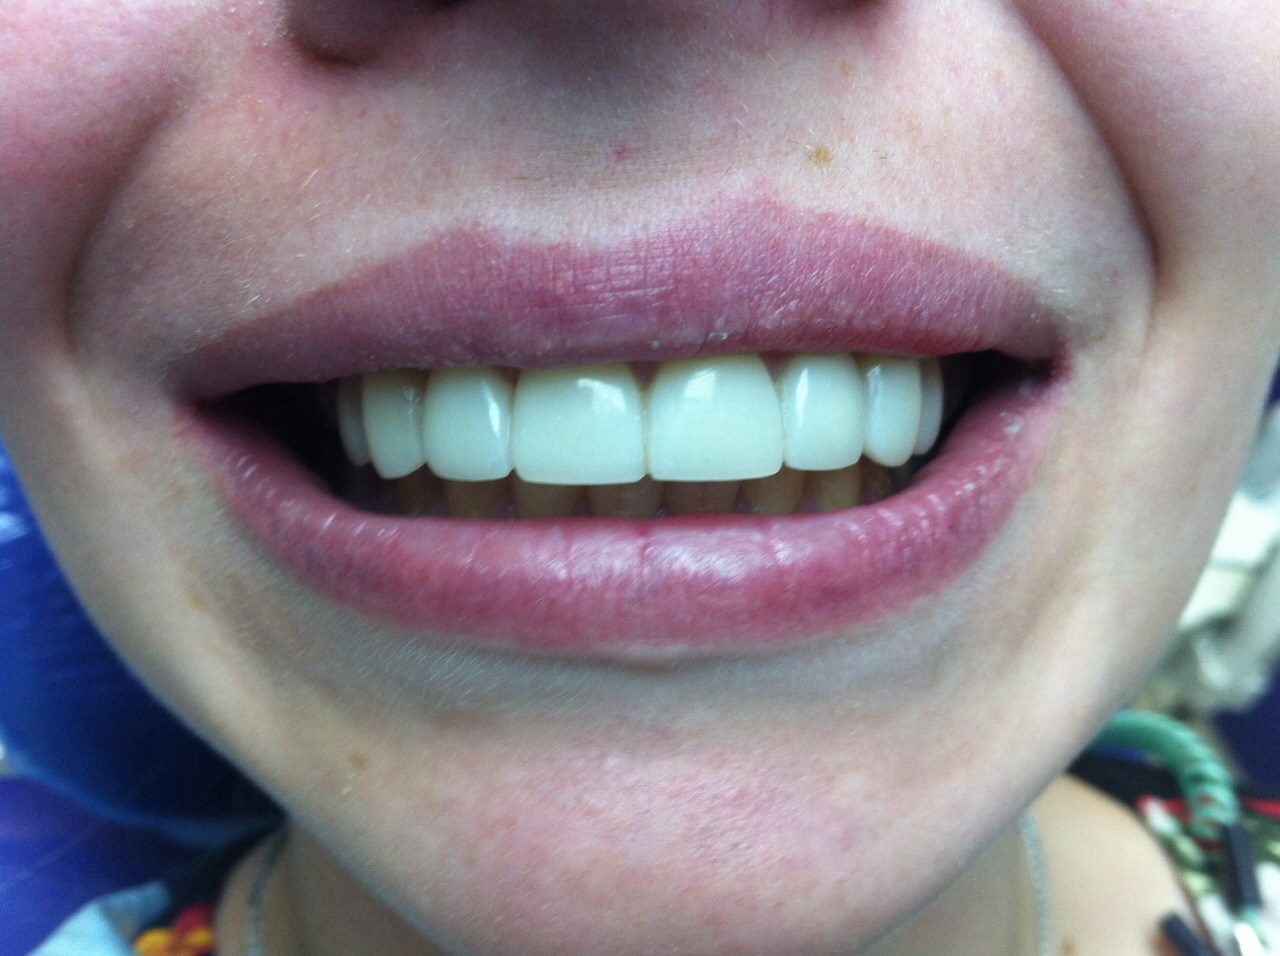 зубы после реставрации